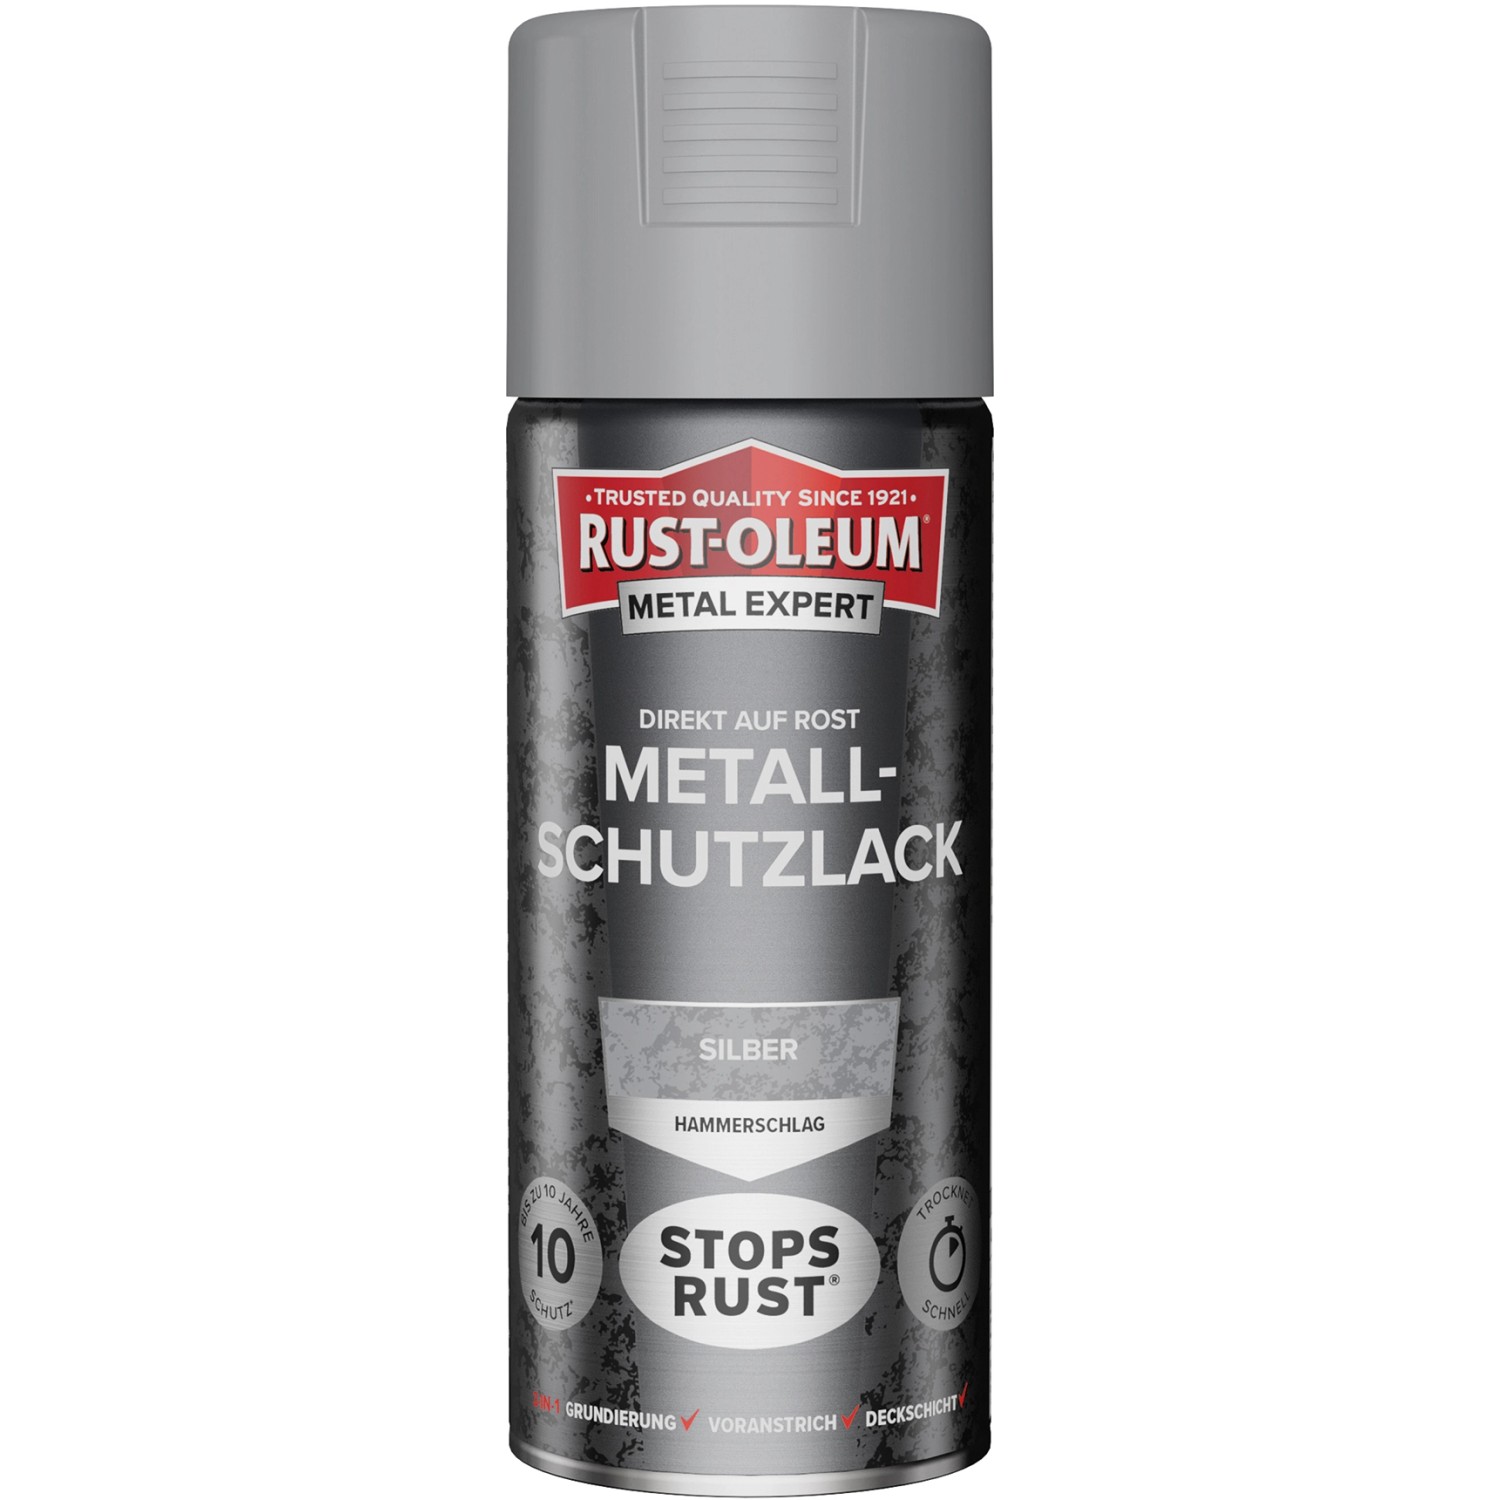 Rust-Oleum Metal Expert Hammerschlag Sprühfarbe Silber 400 ml von Rust-Oleum